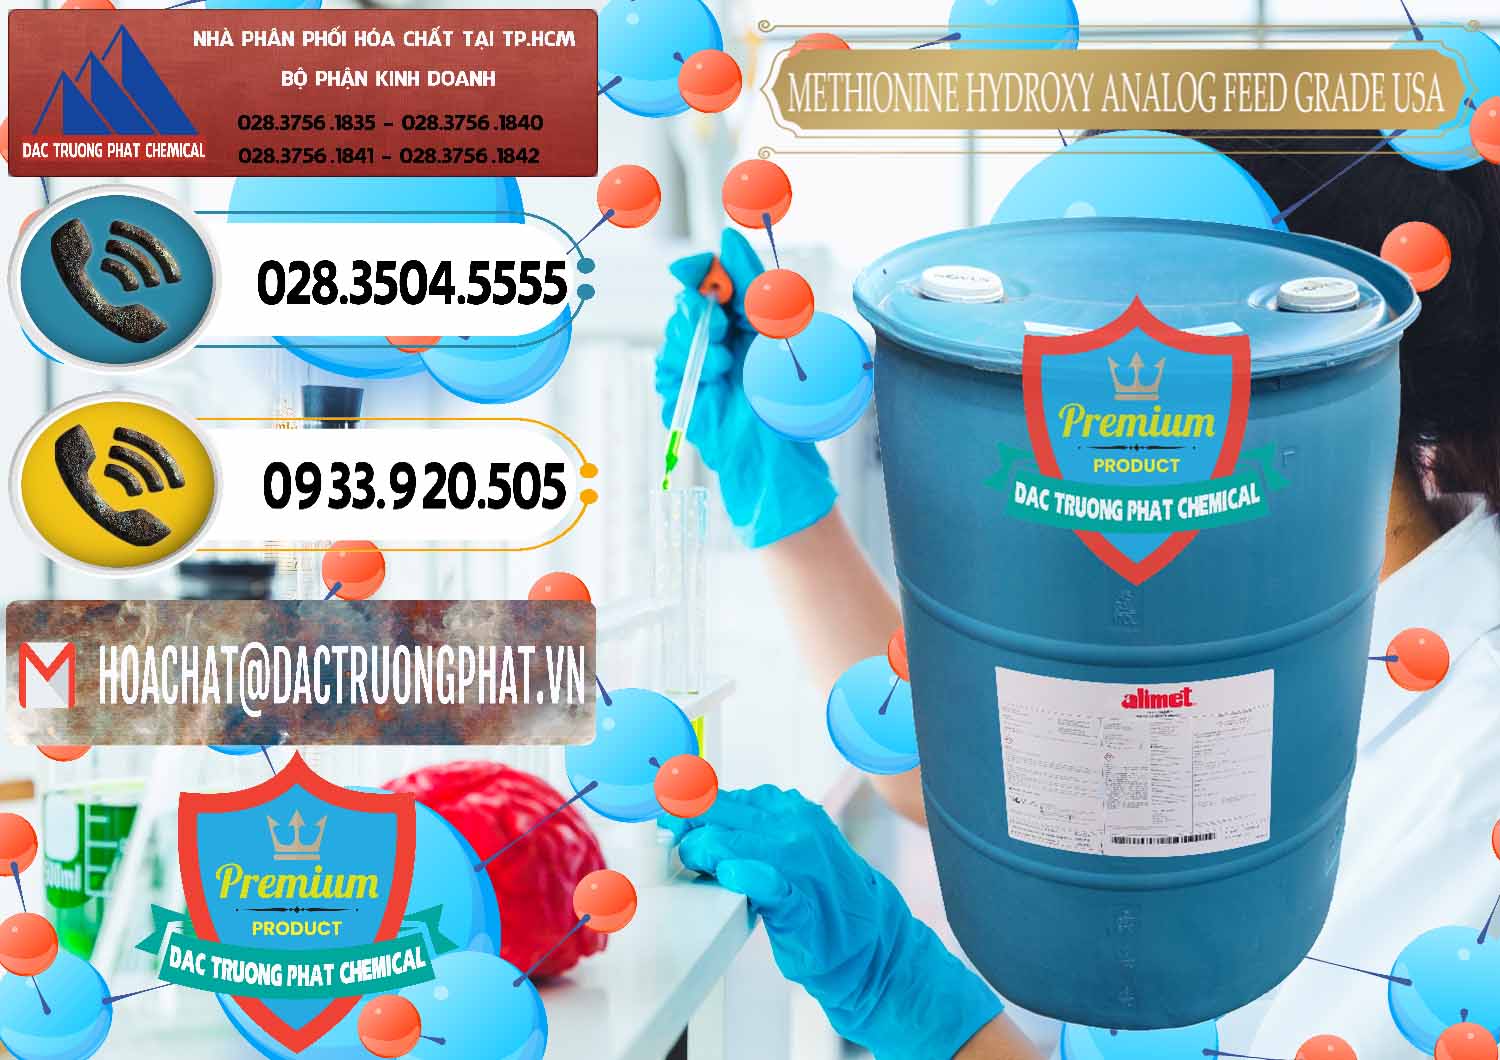 Đơn vị bán _ cung cấp Methionine Nước - Dạng Lỏng Novus Alimet Mỹ USA - 0316 - Chuyên phân phối ( cung ứng ) hóa chất tại TP.HCM - hoachatdetnhuom.vn